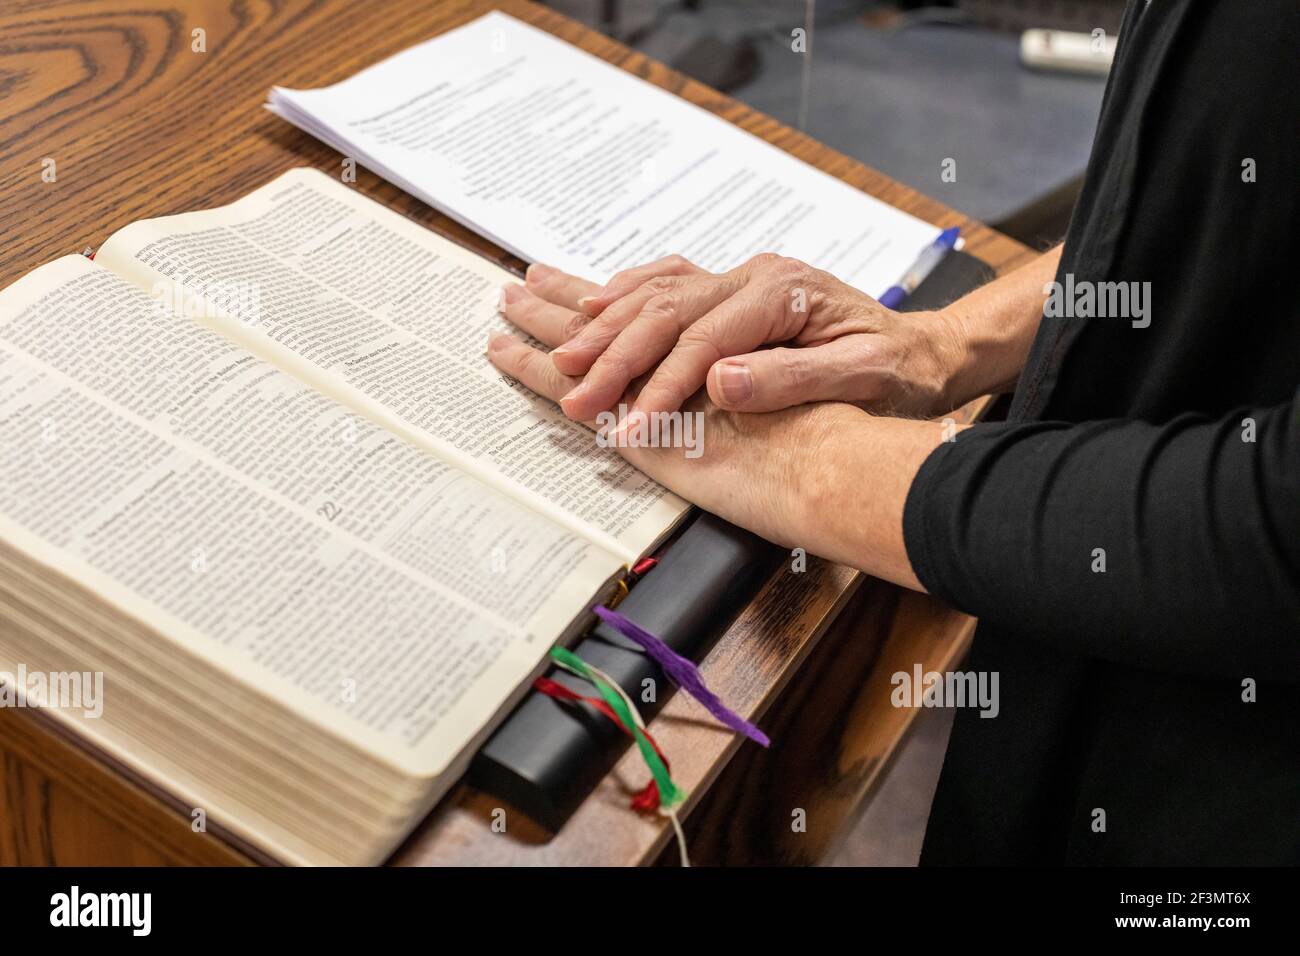 Detroit, Michigan - Dr. Mary Healy, Professorin für Heilige Schrift am Großen Seminar des Heiligen Herzens, liest aus der Bibel, bevor sie eine Klasse an der deac unterrichtet Stockfoto